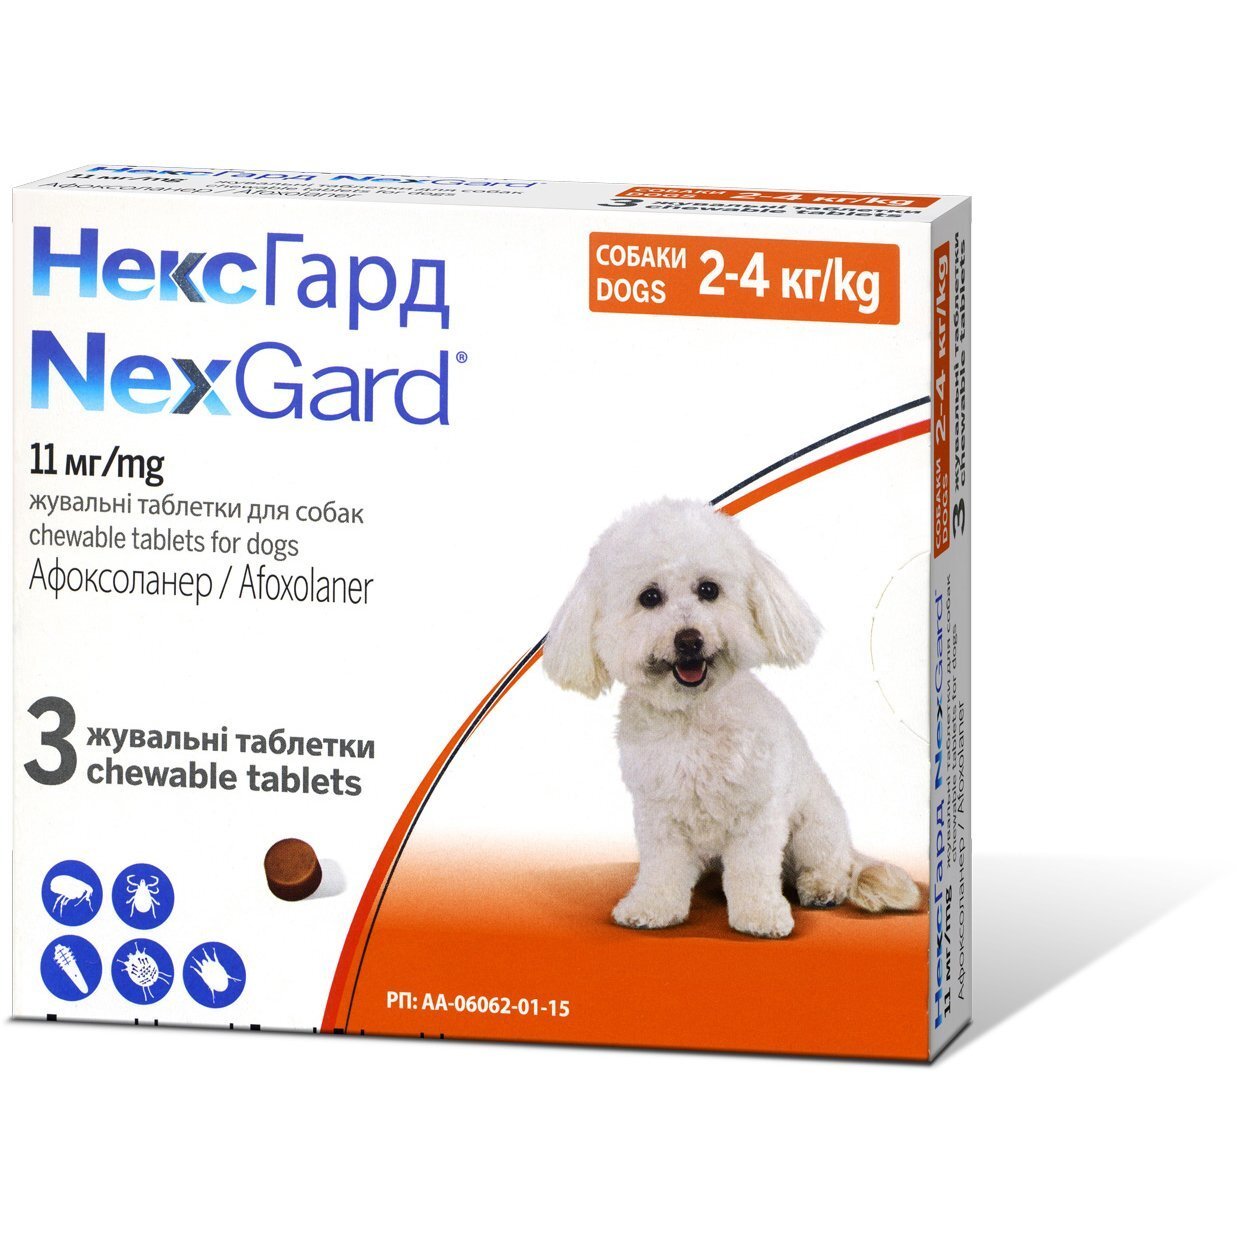 Жувальні таблетки Boehringer Ingelheim Nexgard (Нексгард) від бліх та кліщів для собак вагою 2-4 кг (S) 3 шт.x0.5 г уфото